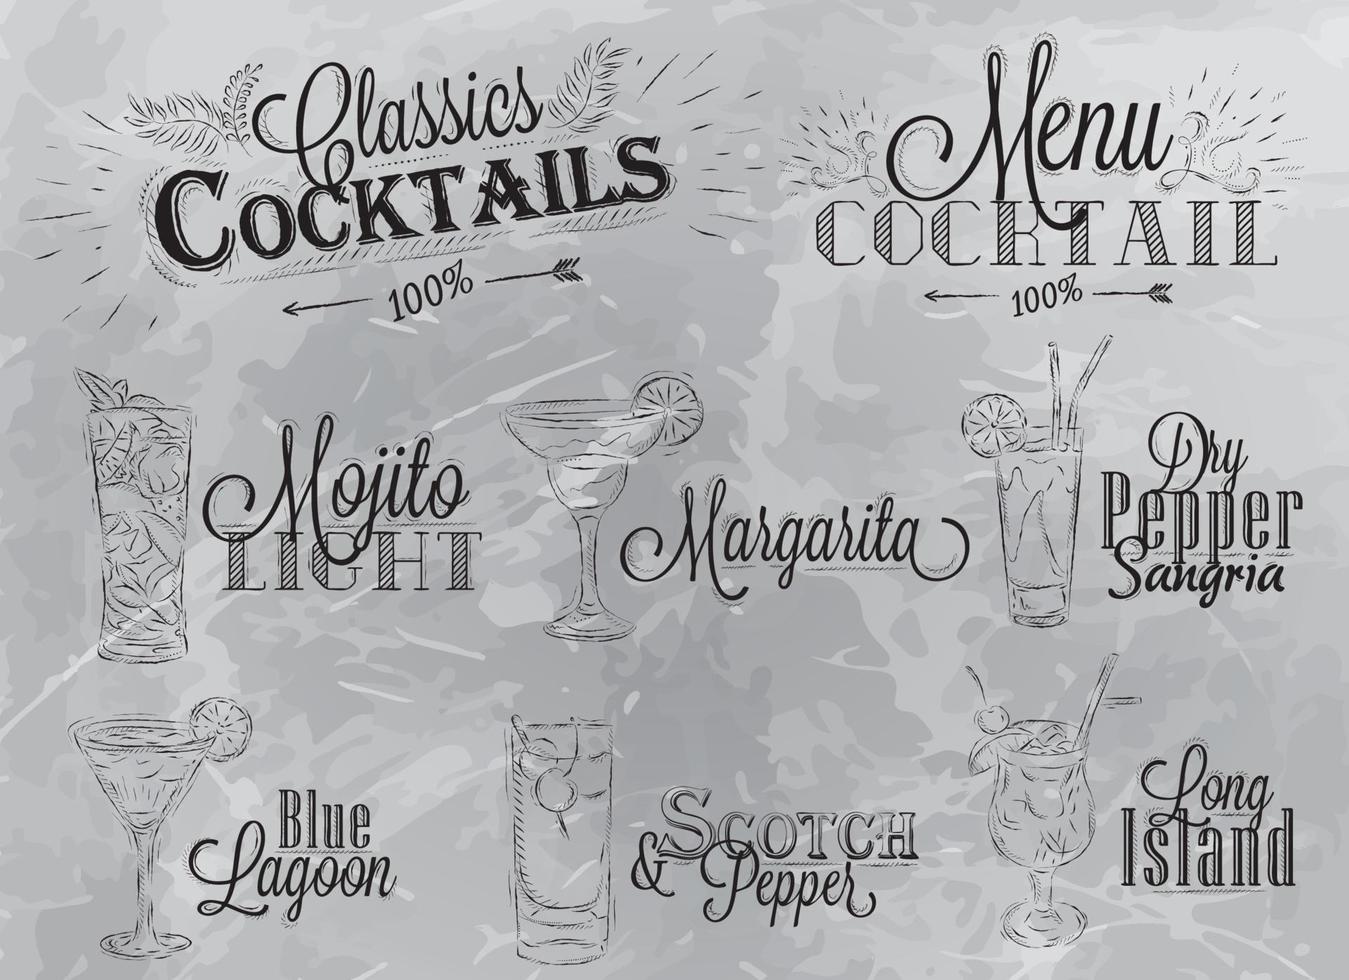 satz von cocktailkarte im vintage-stil stilisierte zeichnung in kohle auf grauem hintergrund, mojito-cocktails mit illustriertem margarita scotch der blauen lagune vektor